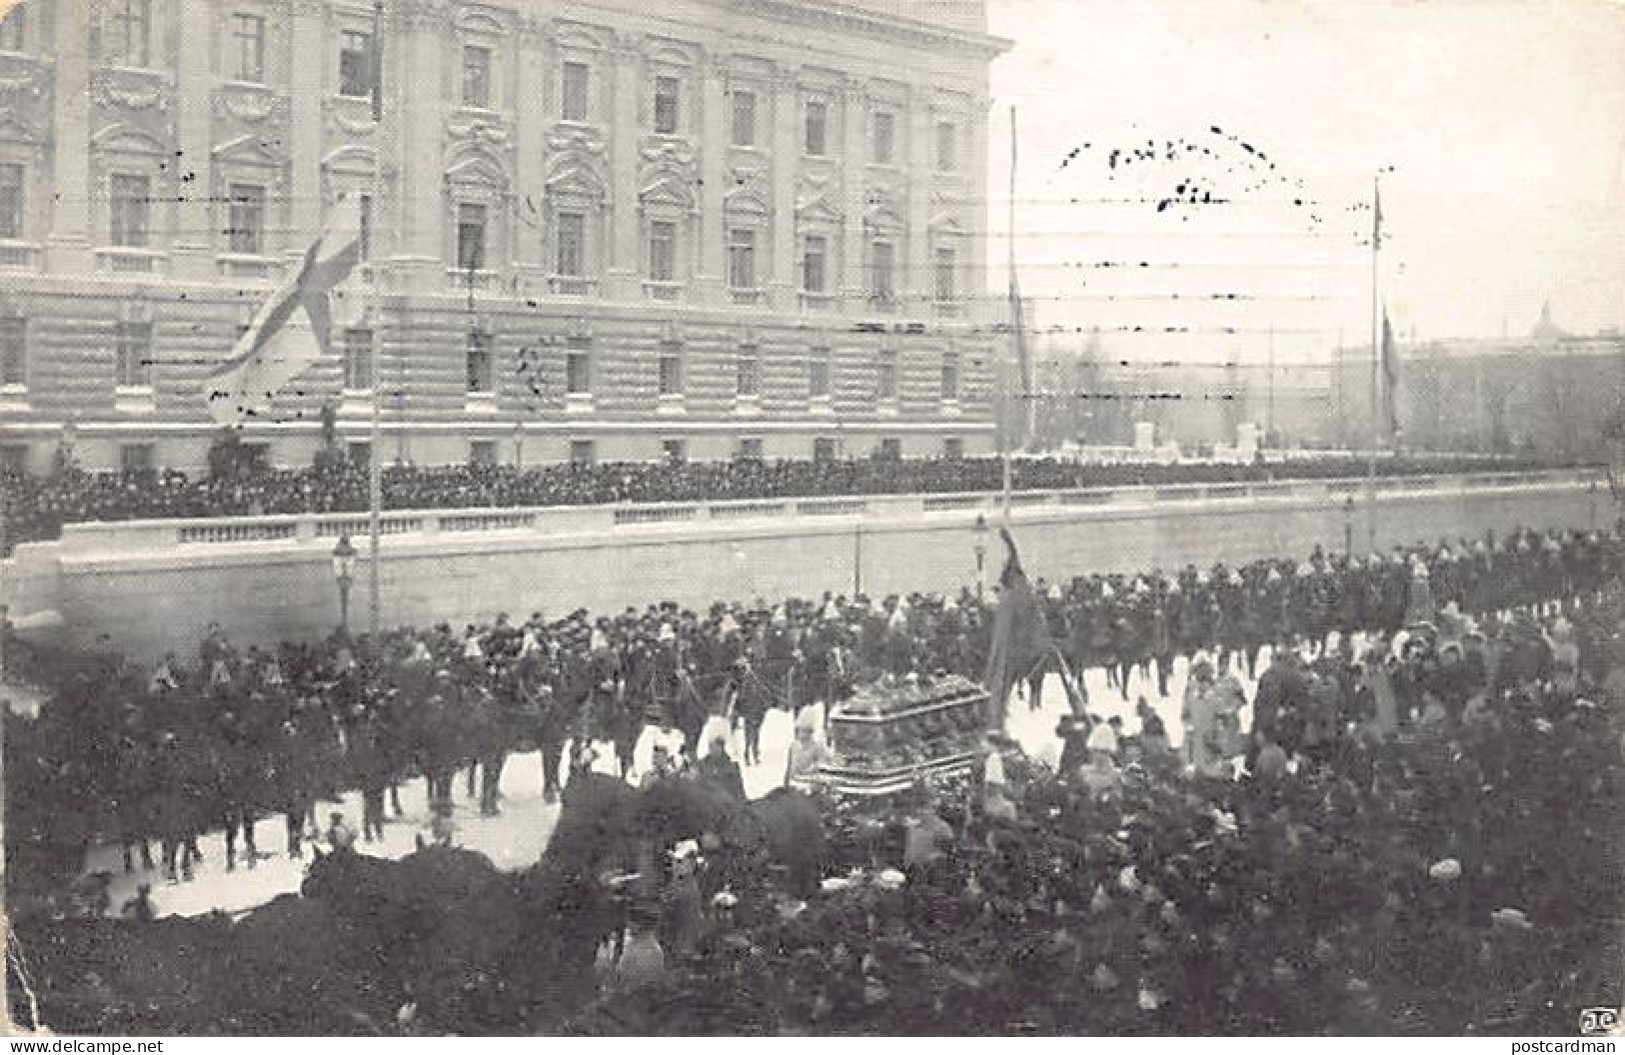 SVERIGE Sweden - STOCKHOLM - Konung Oscar II's Begravning Den 19 Dec. 1907 - King Oscar II's Funeral On 19 Dec. 1907 - P - Sweden